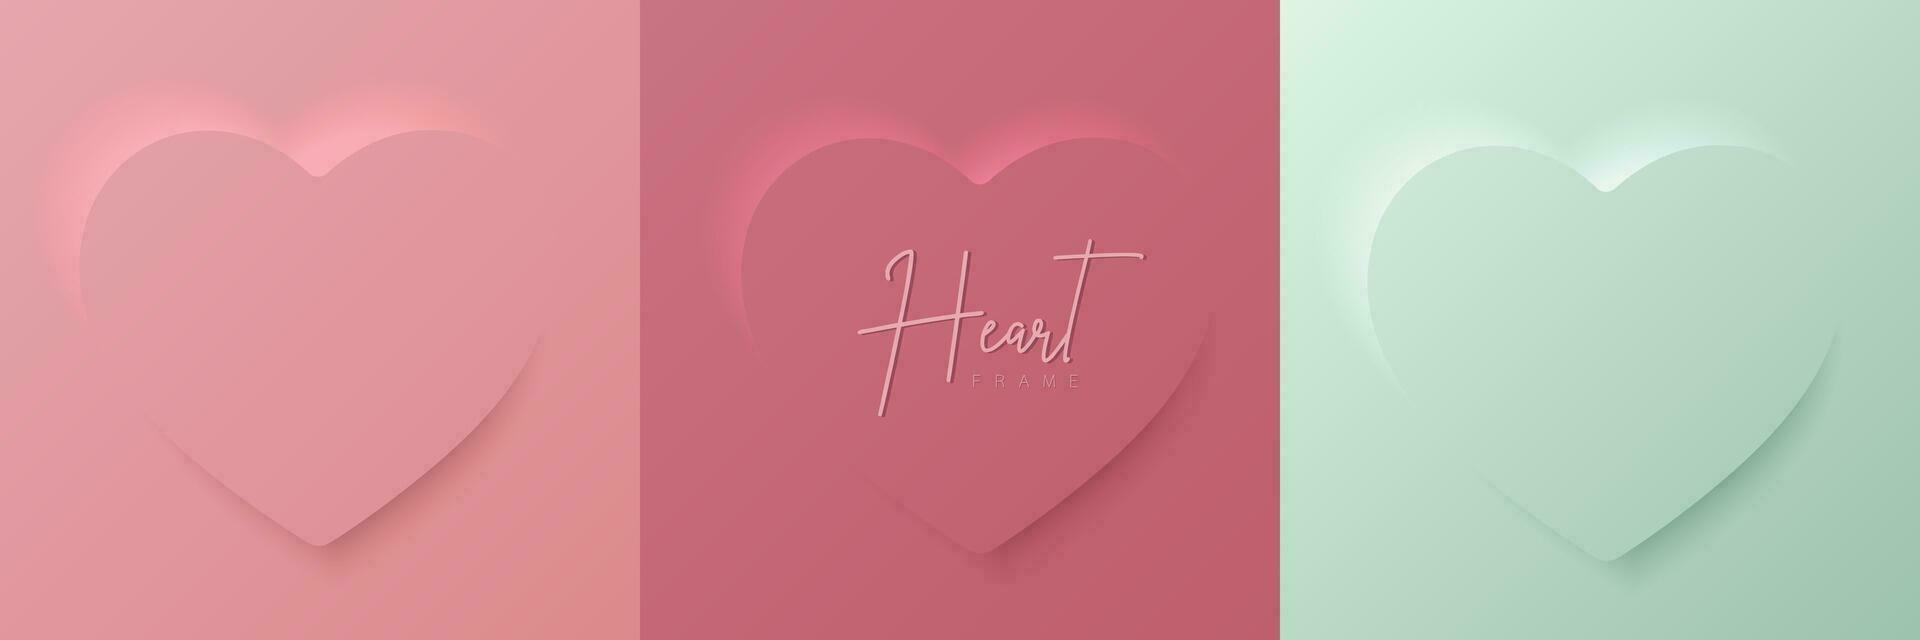 uppsättning av pastell rosa och mynta grön mjuk 3d hjärta form ram design. samling av geometrisk bakgrund för kosmetisk produkt visa, valentine dag festival design, presentation, baner, omslag och webb. vektor